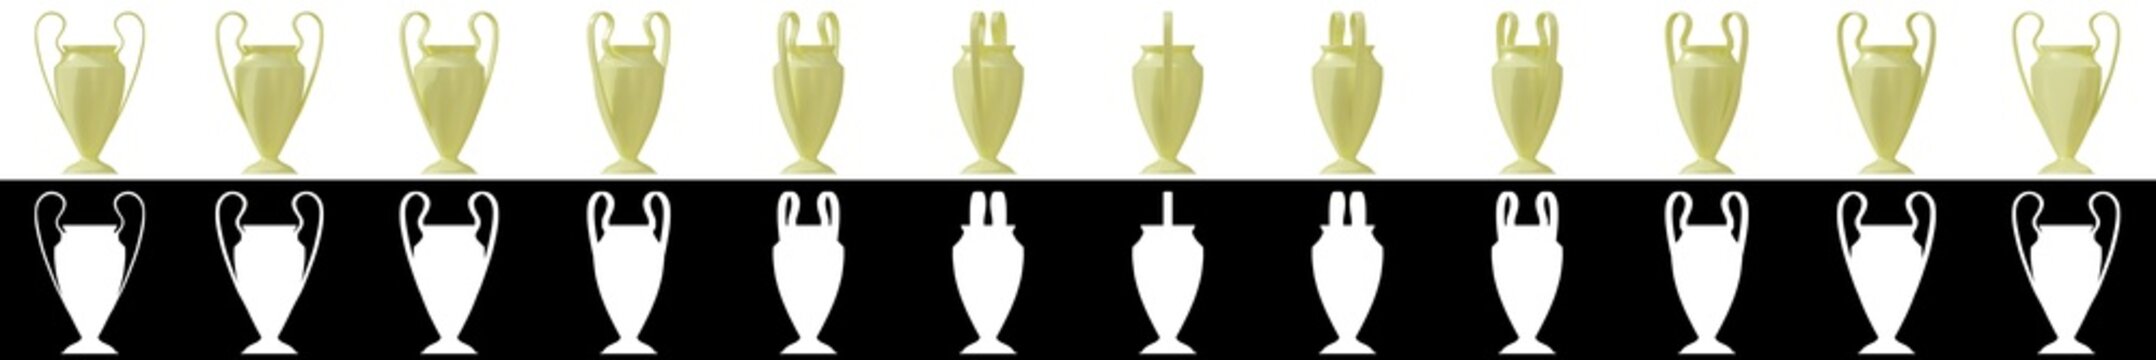 3D rendering illustration of trophy cup sprites